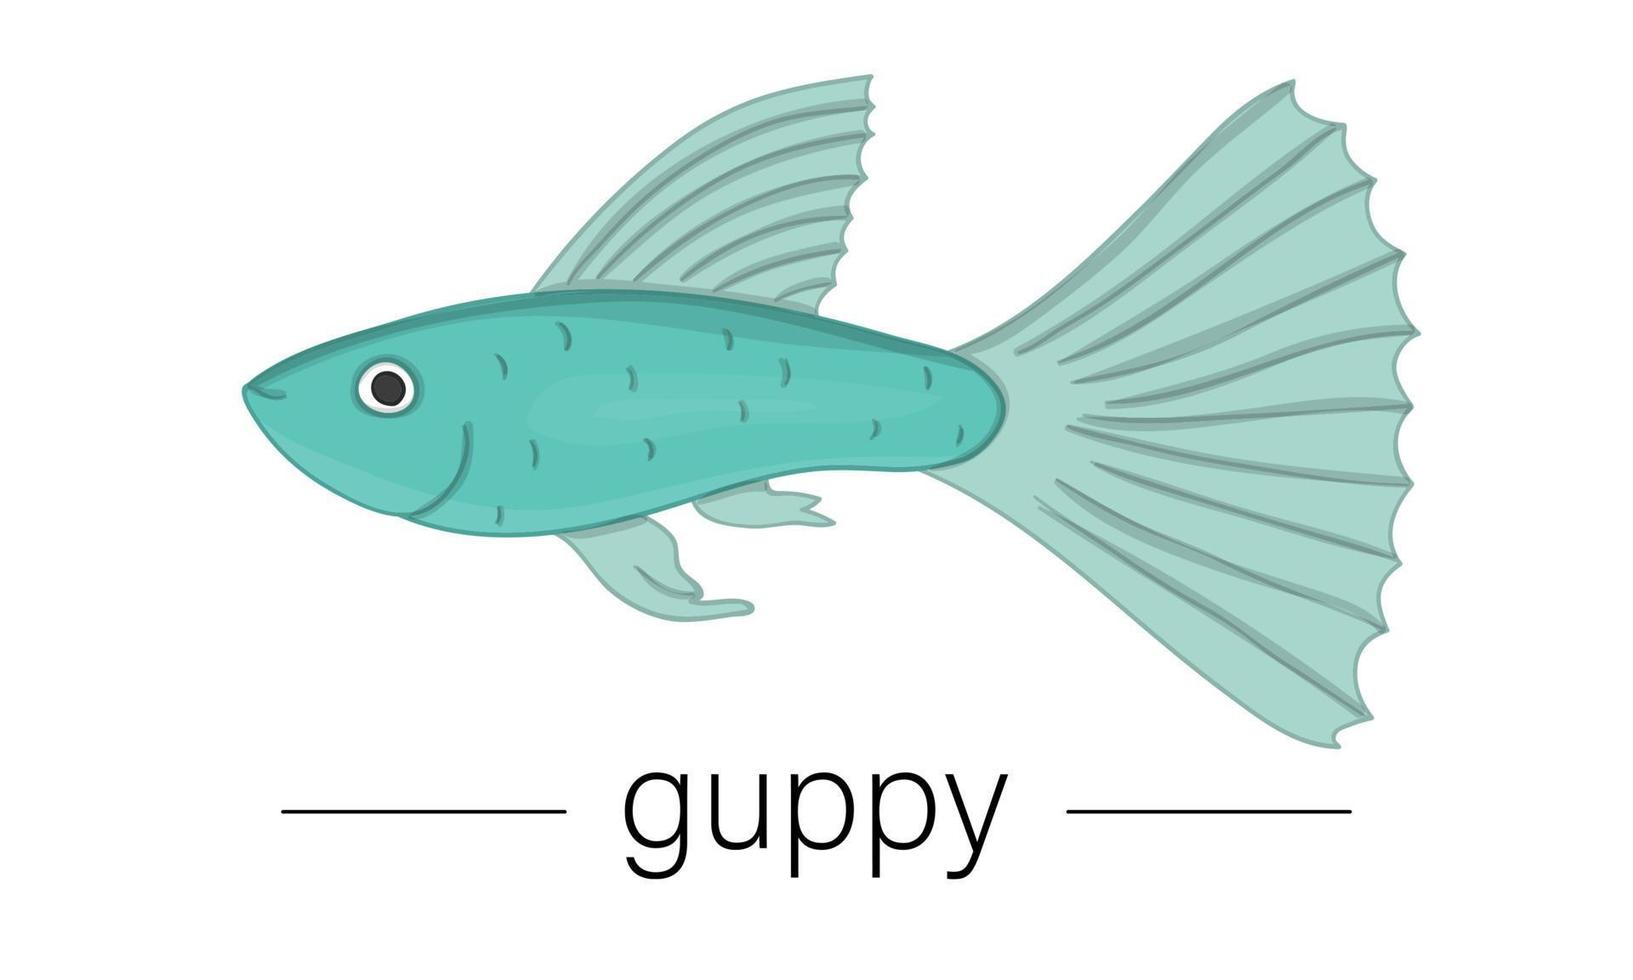 illustrazione vettoriale colorato di pesci d'acquario. immagine carina di guppy per negozi di animali o illustrazione per bambini